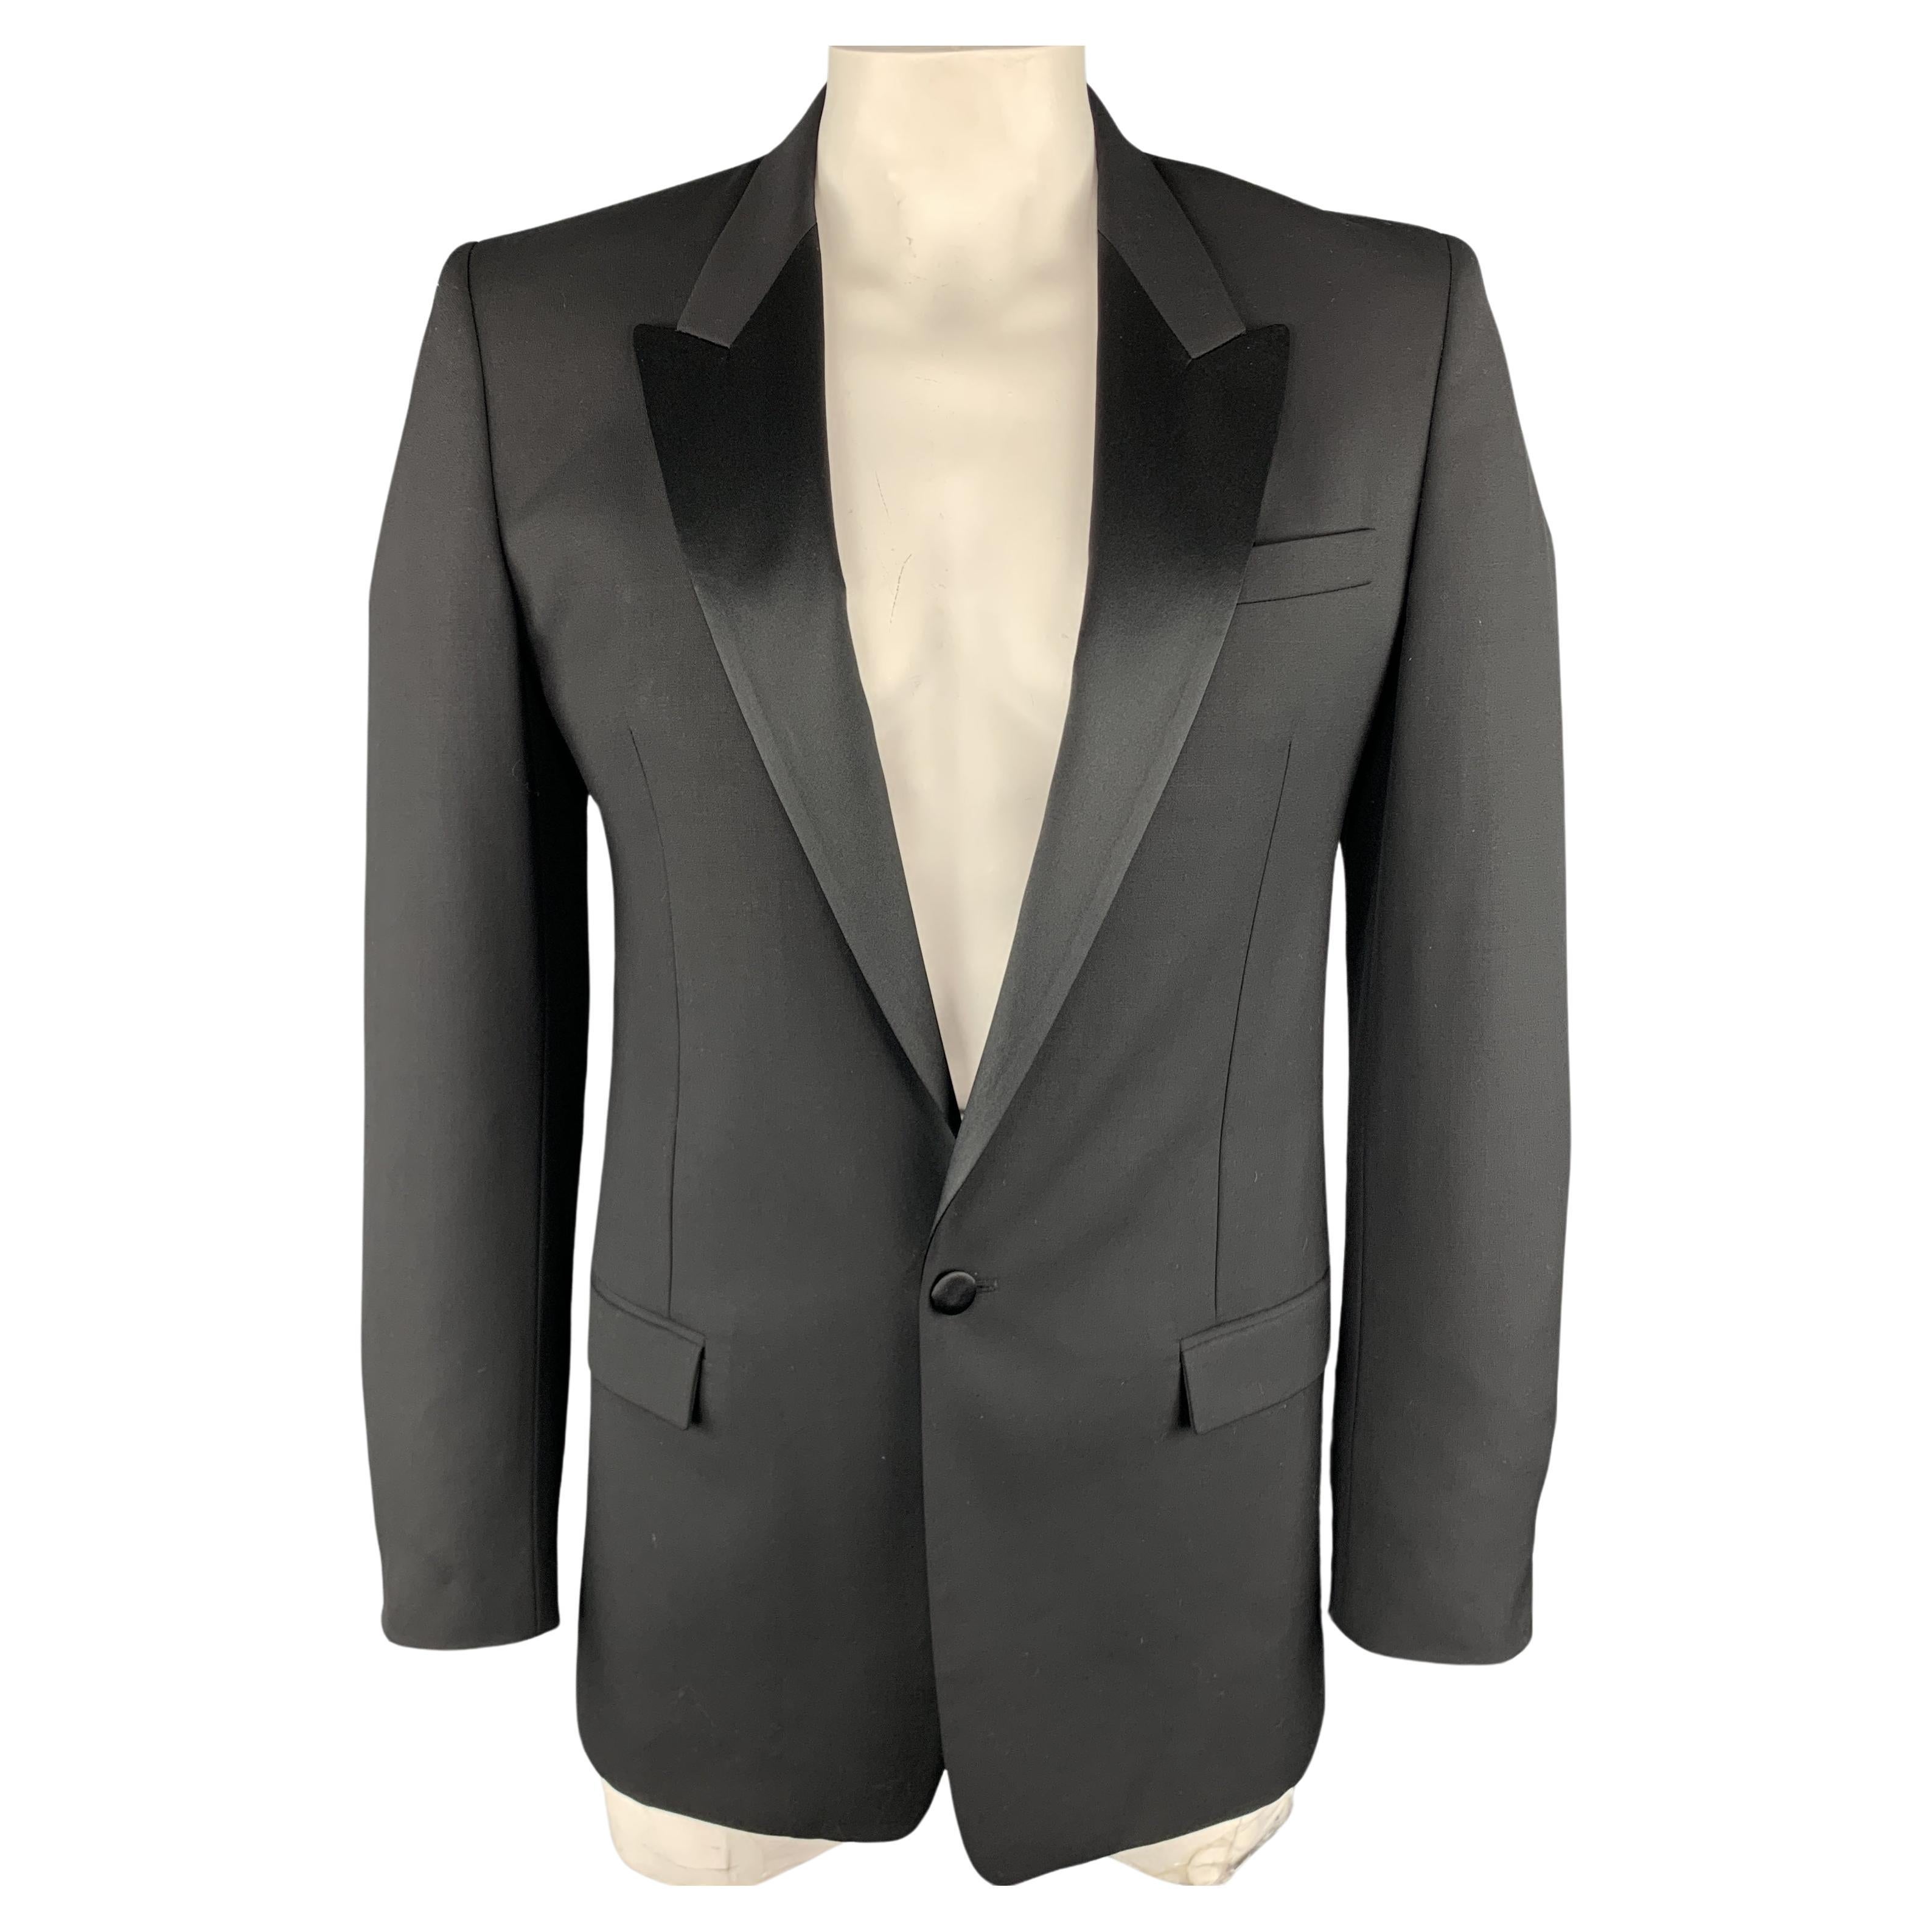 MARC JACOBS Size 40 Black Wool Peak Lapel Sport Coat Tuxedo Jacket For Sale